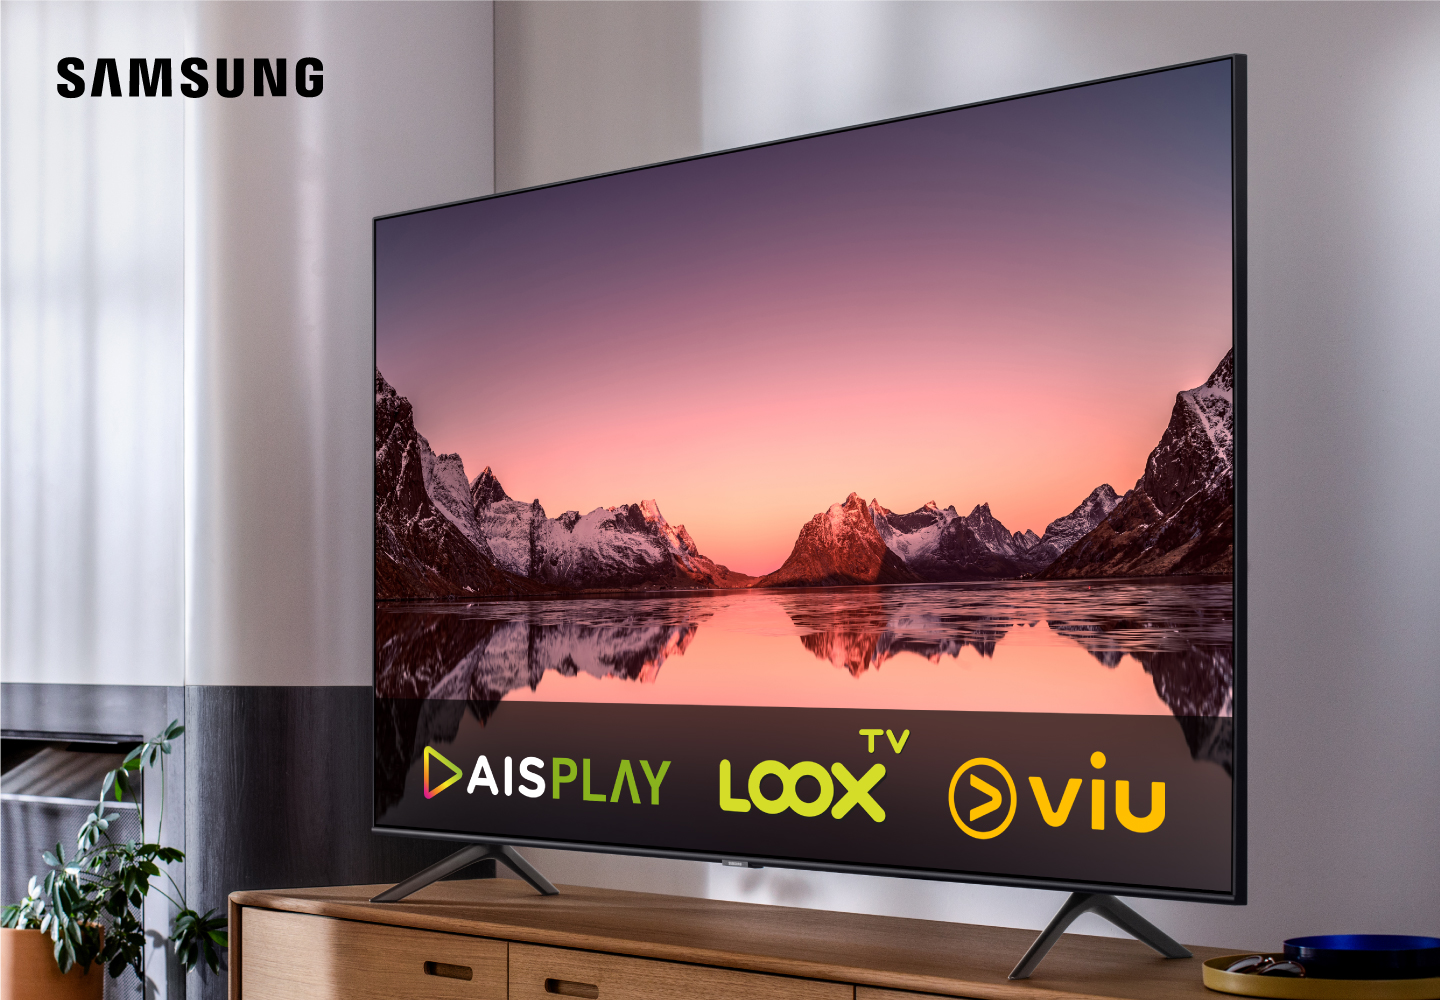 ซื้อทีวี Samsung ดูฟรี AIS Play, LOOX TV และ VIU ตามเงื่อนไขที่กำหนด